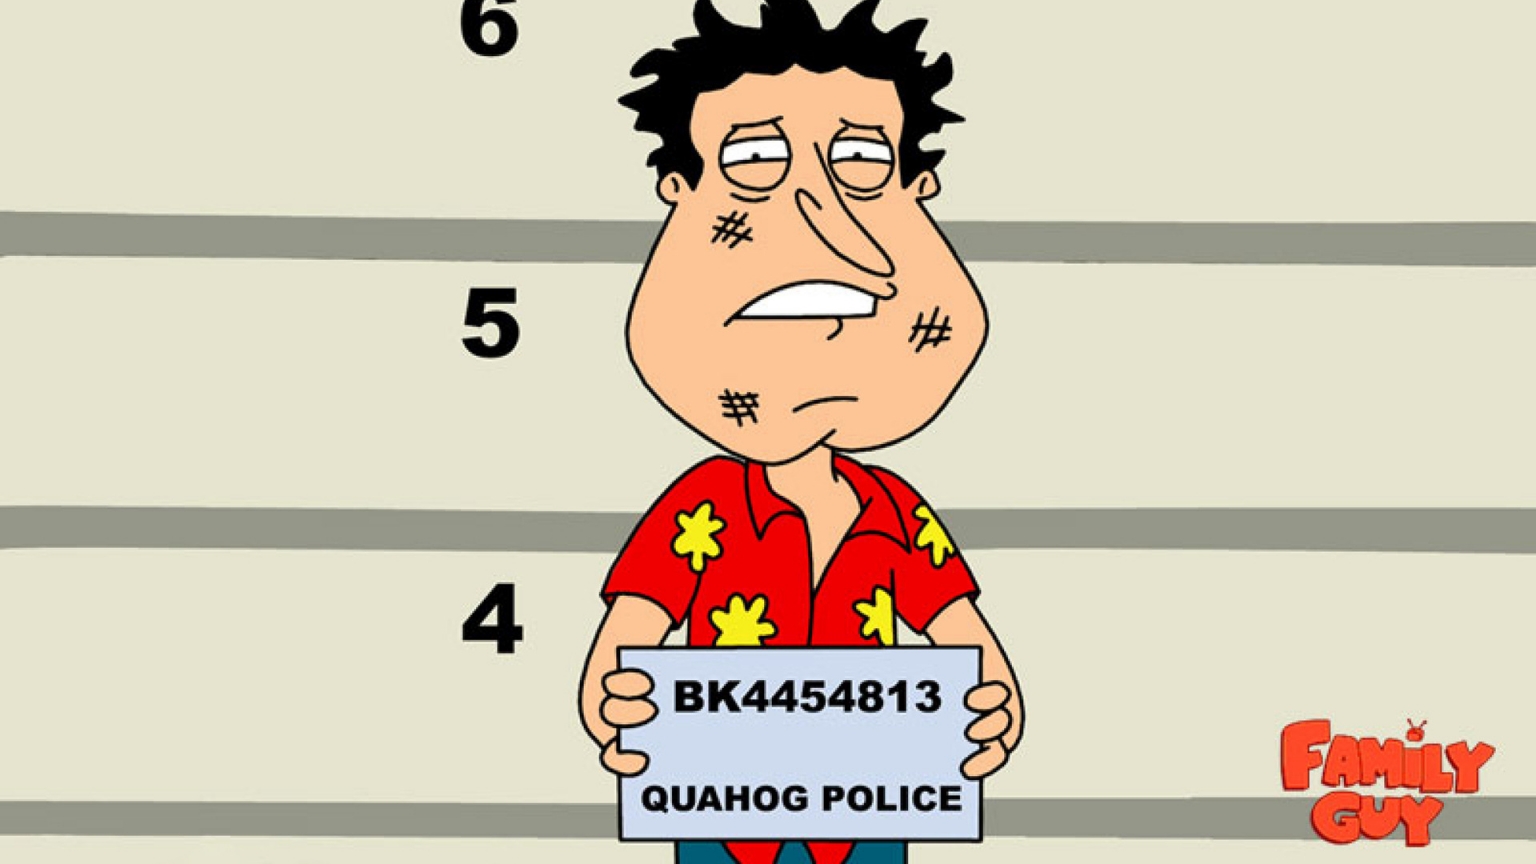 Family Guy Quagmire for 1536 x 864 HDTV resolution